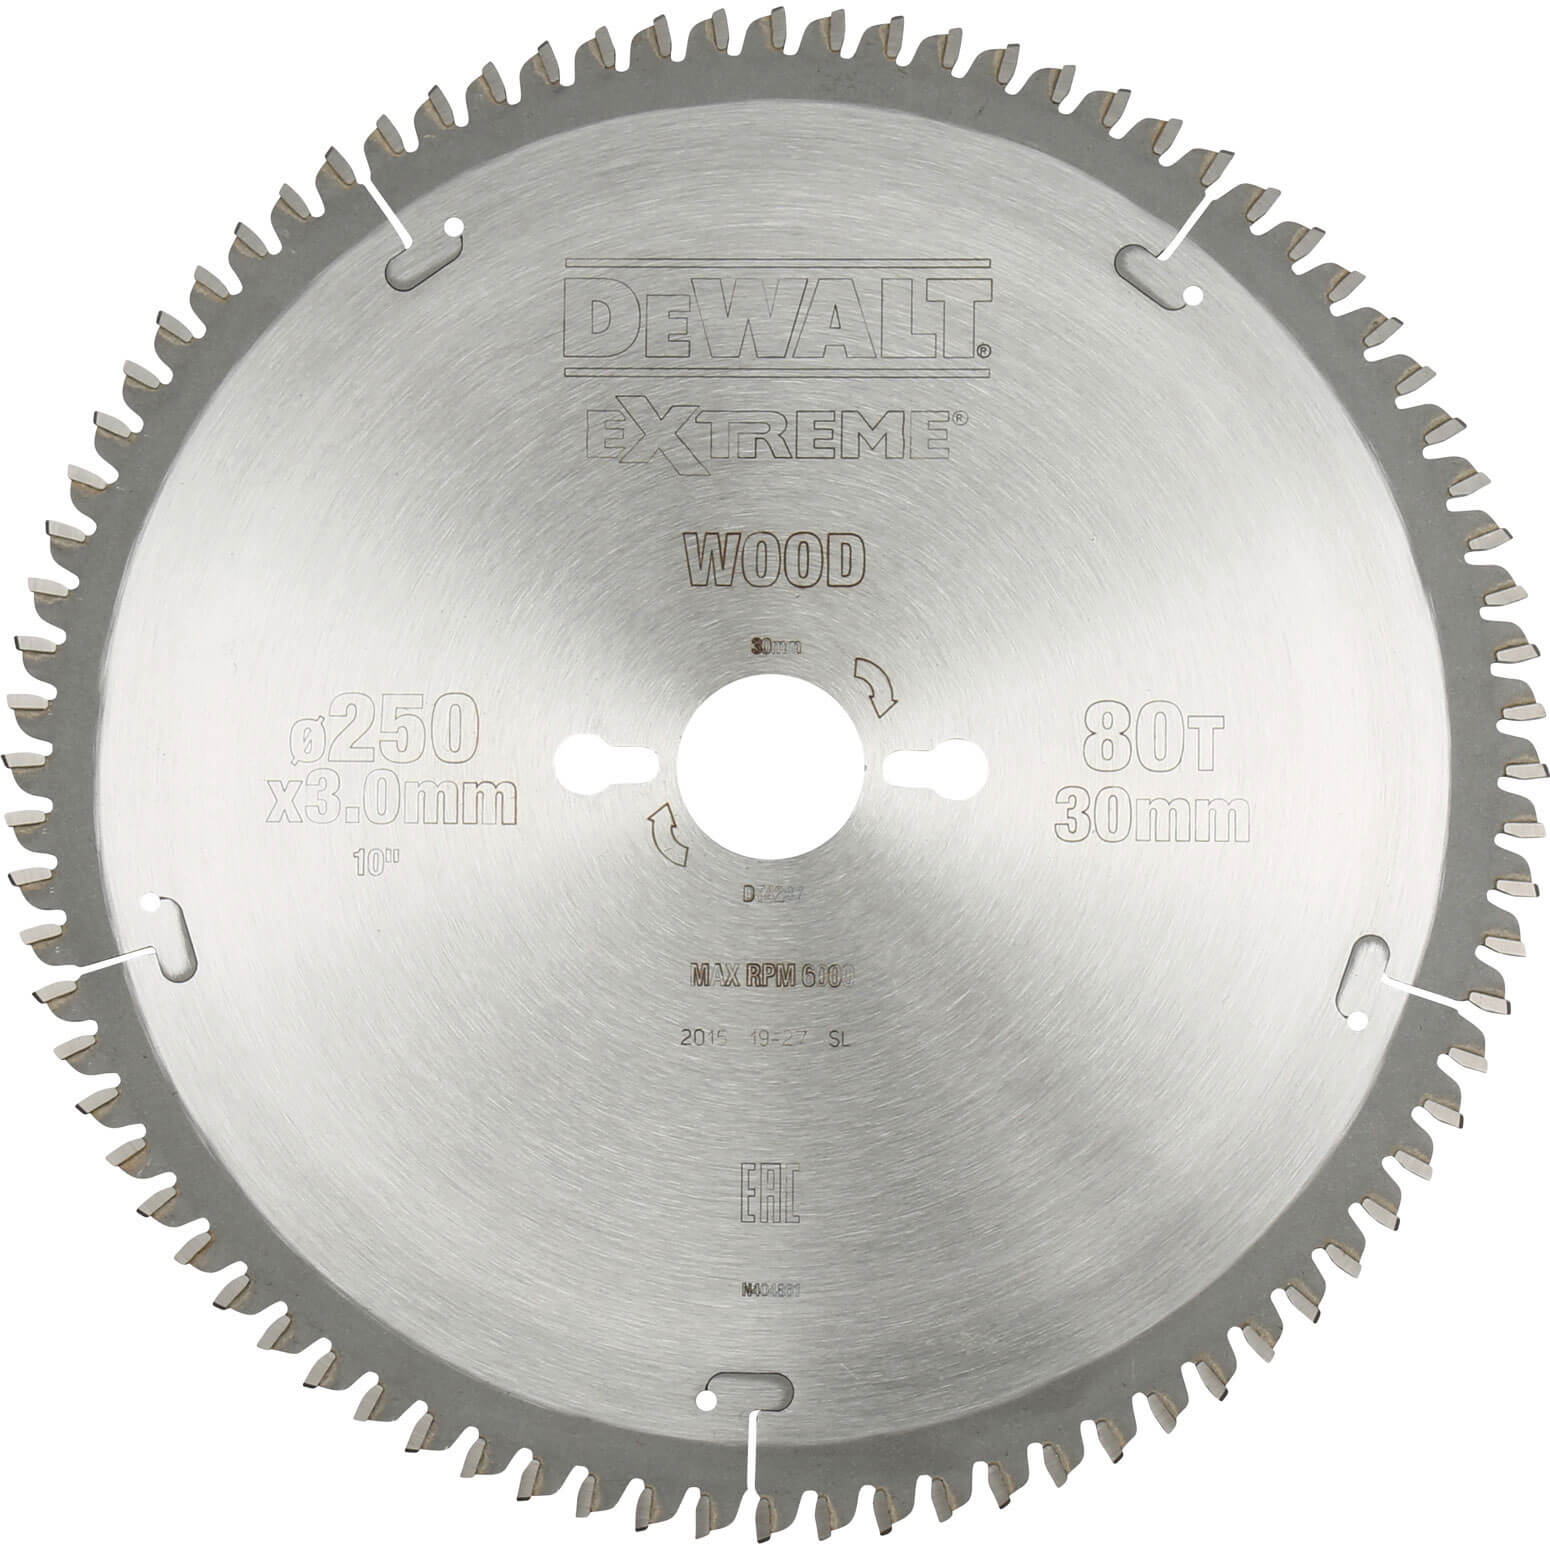 Image of DeWalt Extreme Wood Cutting Saw Blades 250mm 80T 30mm